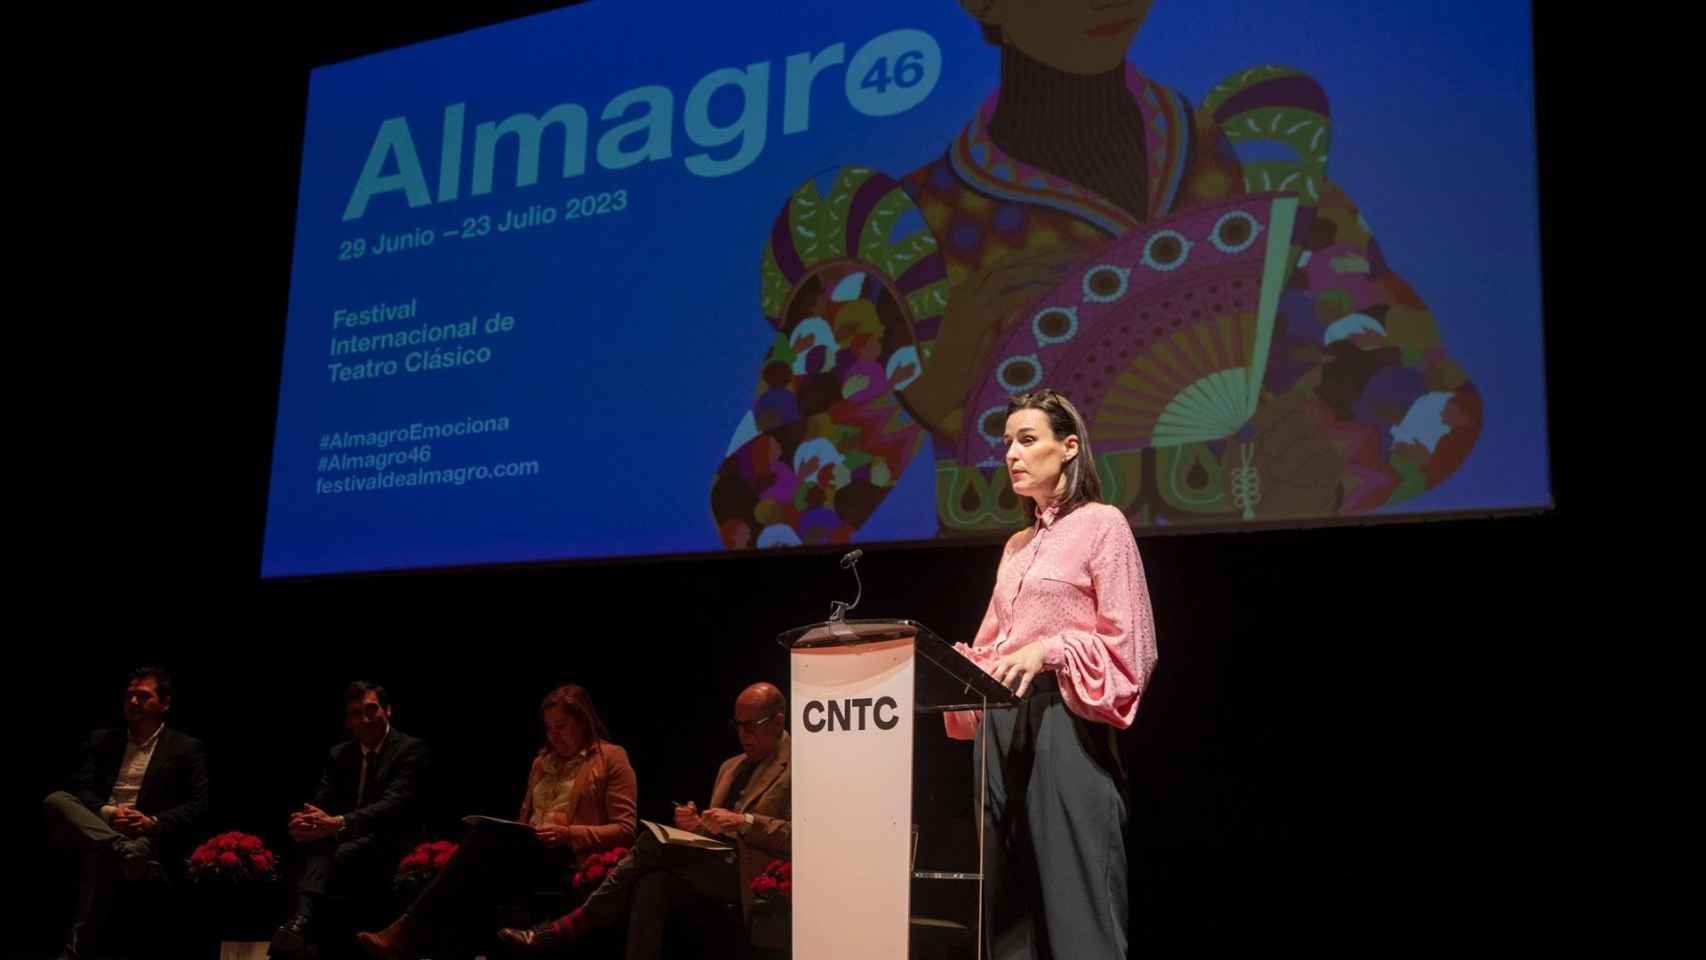 La directora artística del Festival de Almagro, Irene Pardo. Foto: Festival de Almagro.